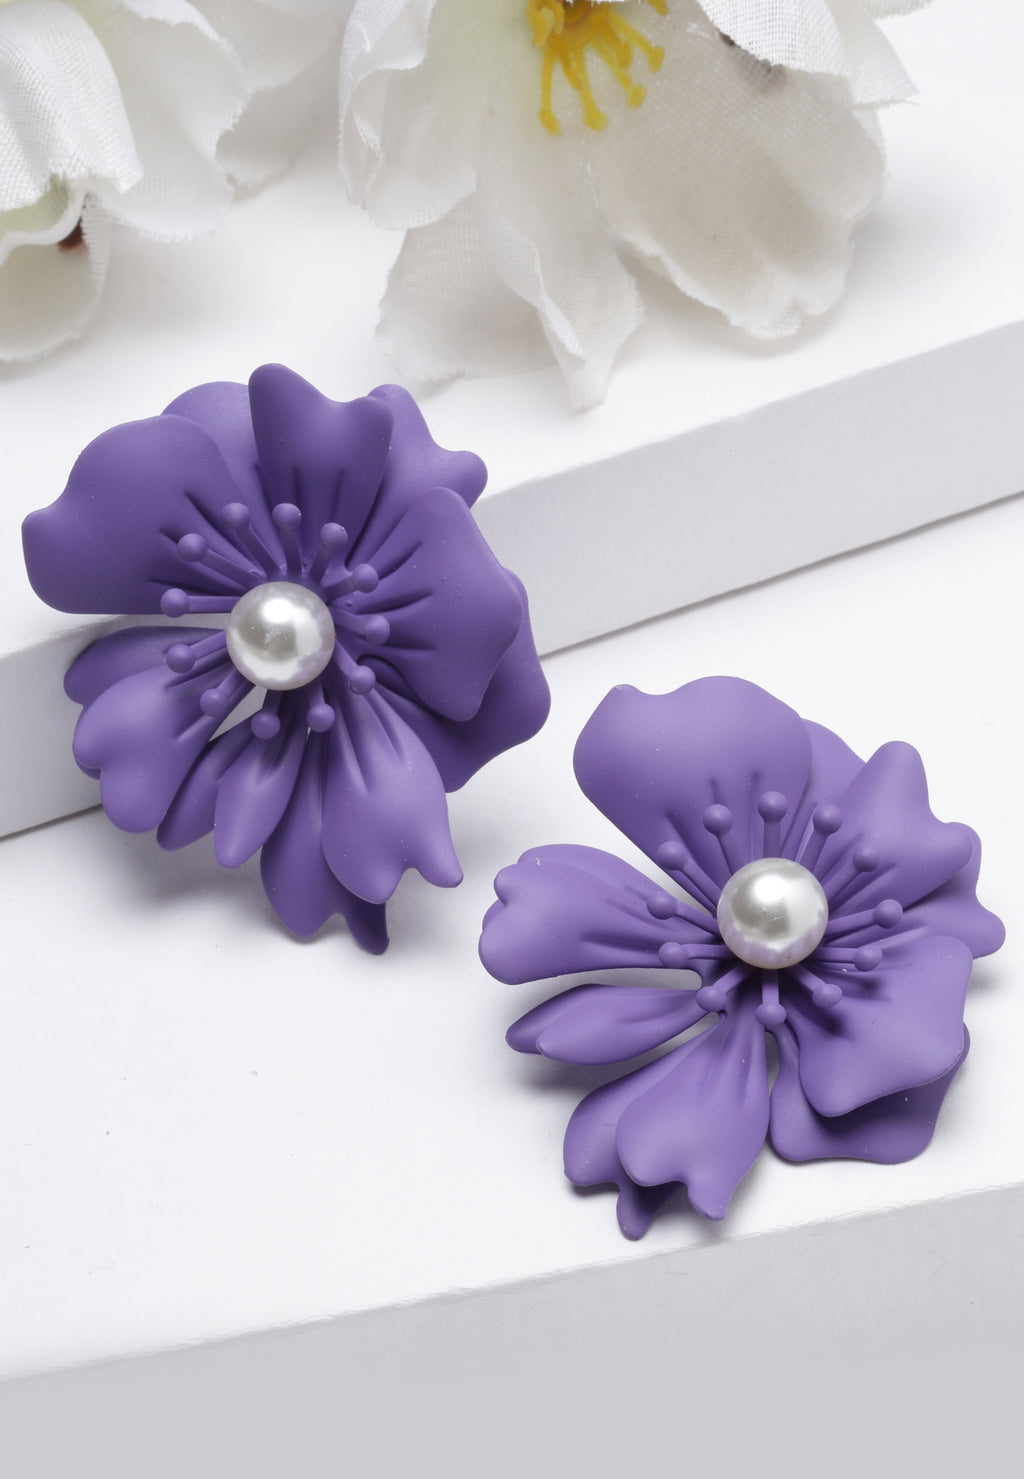 Floral Pearl Stud Earrings In Violet